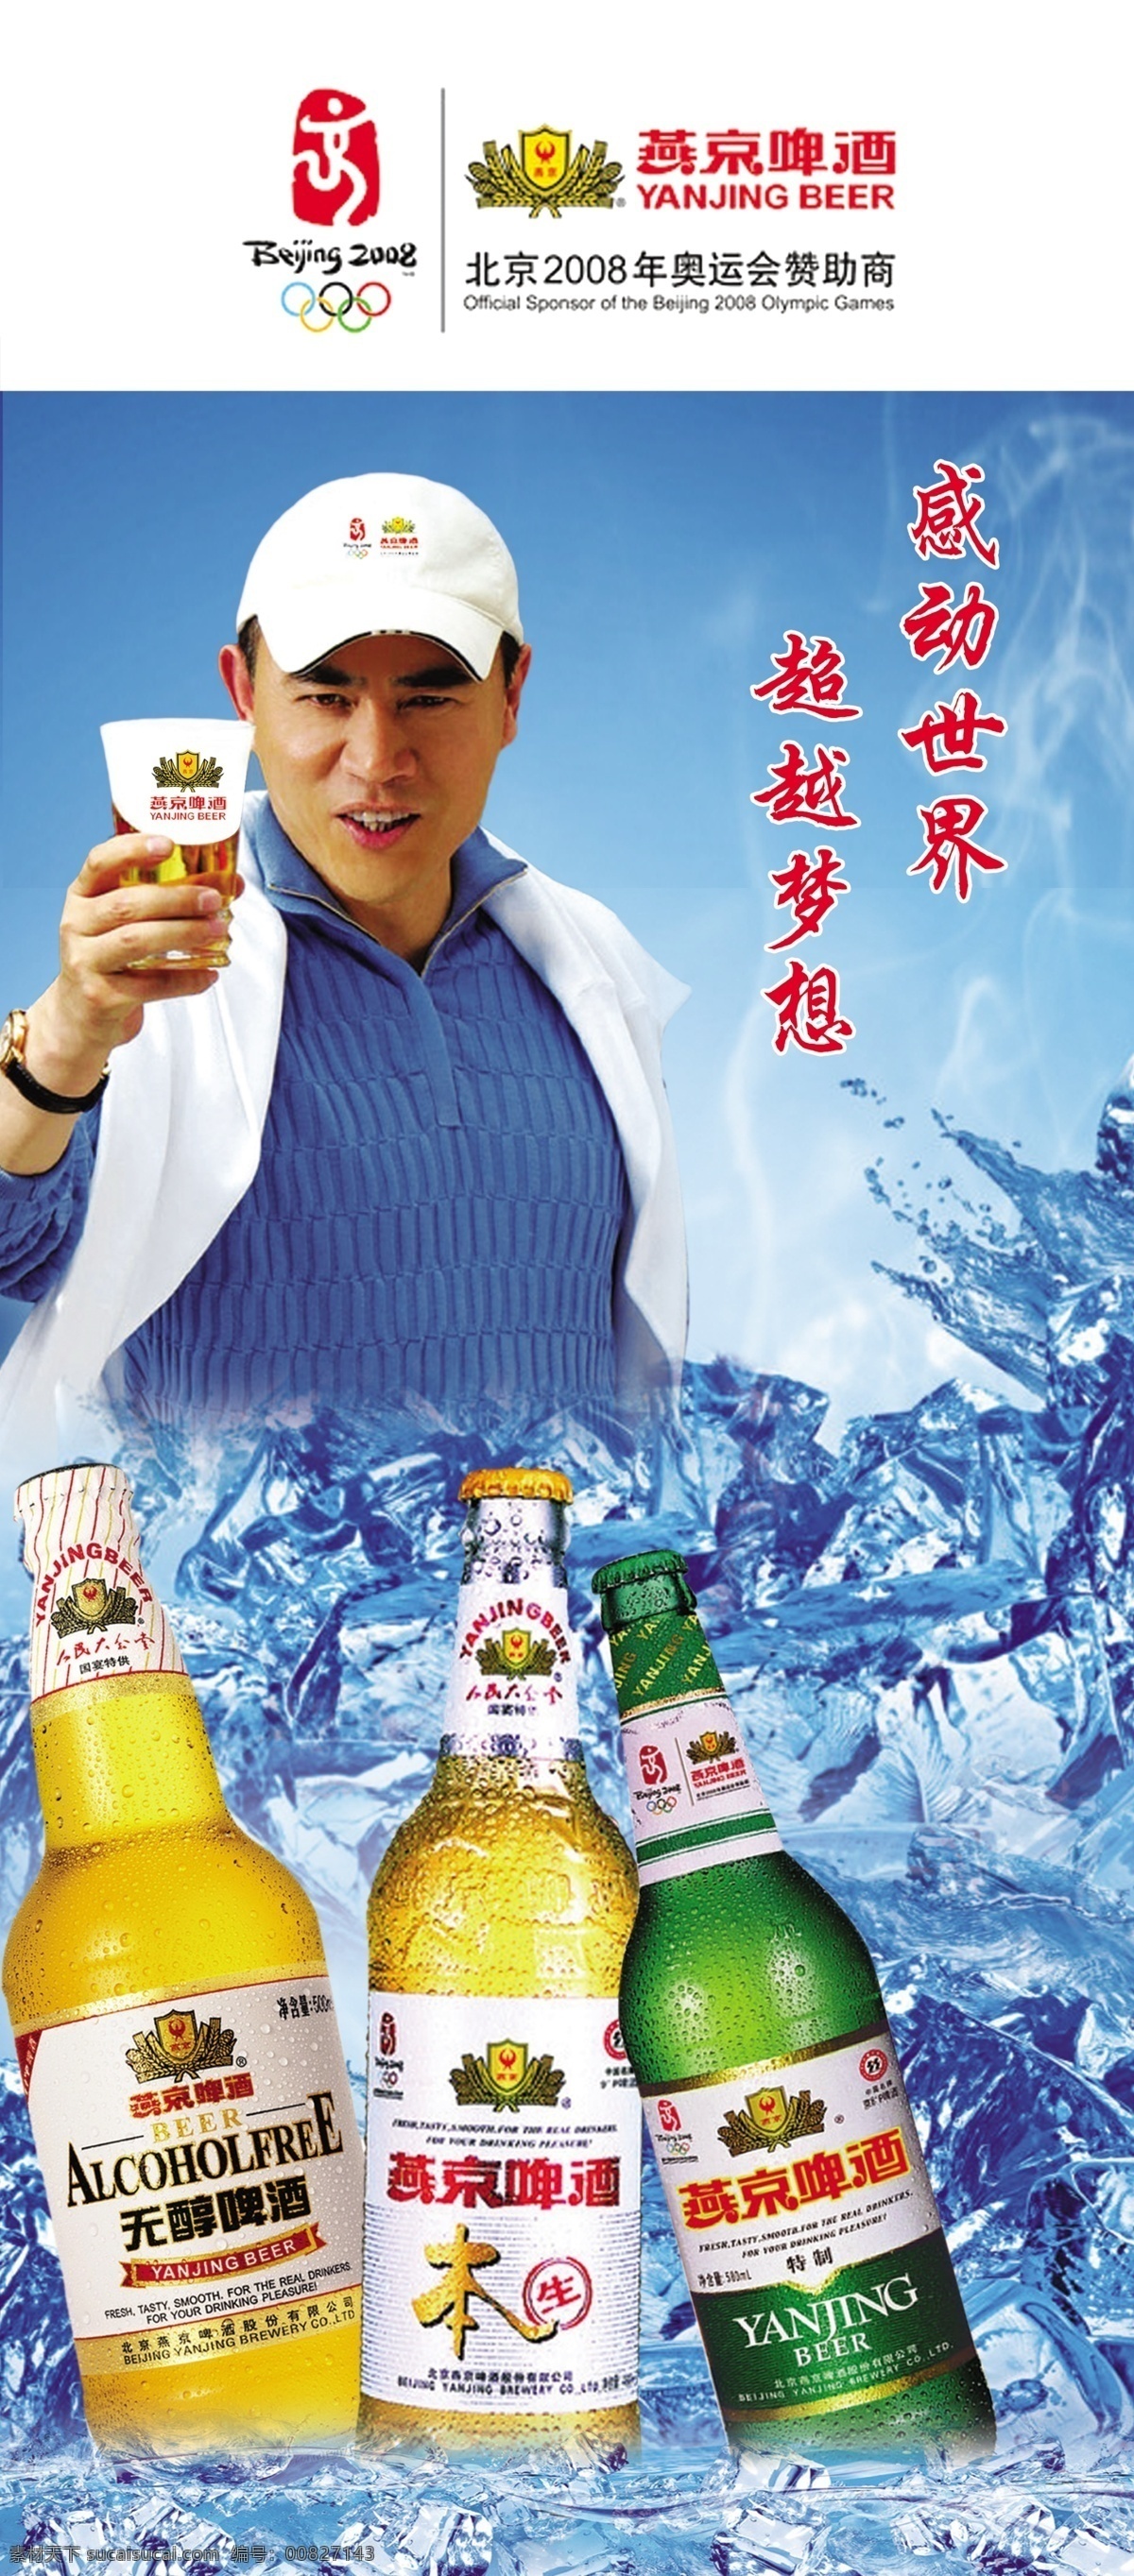 燕京啤酒 北京 2008 标志 啤酒 冰块 水花 代言人 广告设计模板 源文件